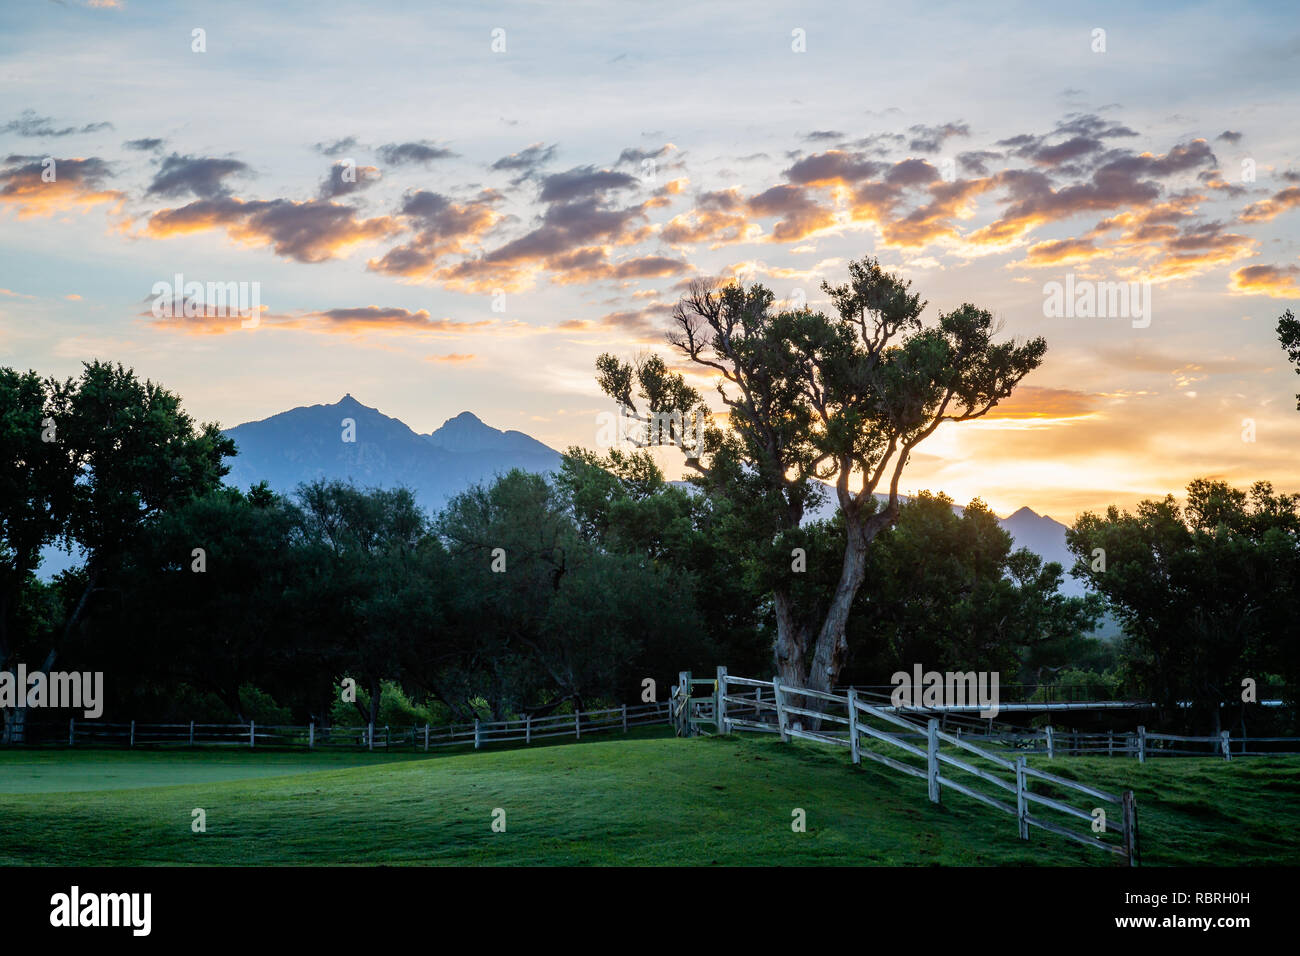 El cruce entre pastos y campo de golf con un telón de fondo de montañas y el amanecer. El sur de Arizona. Foto de stock